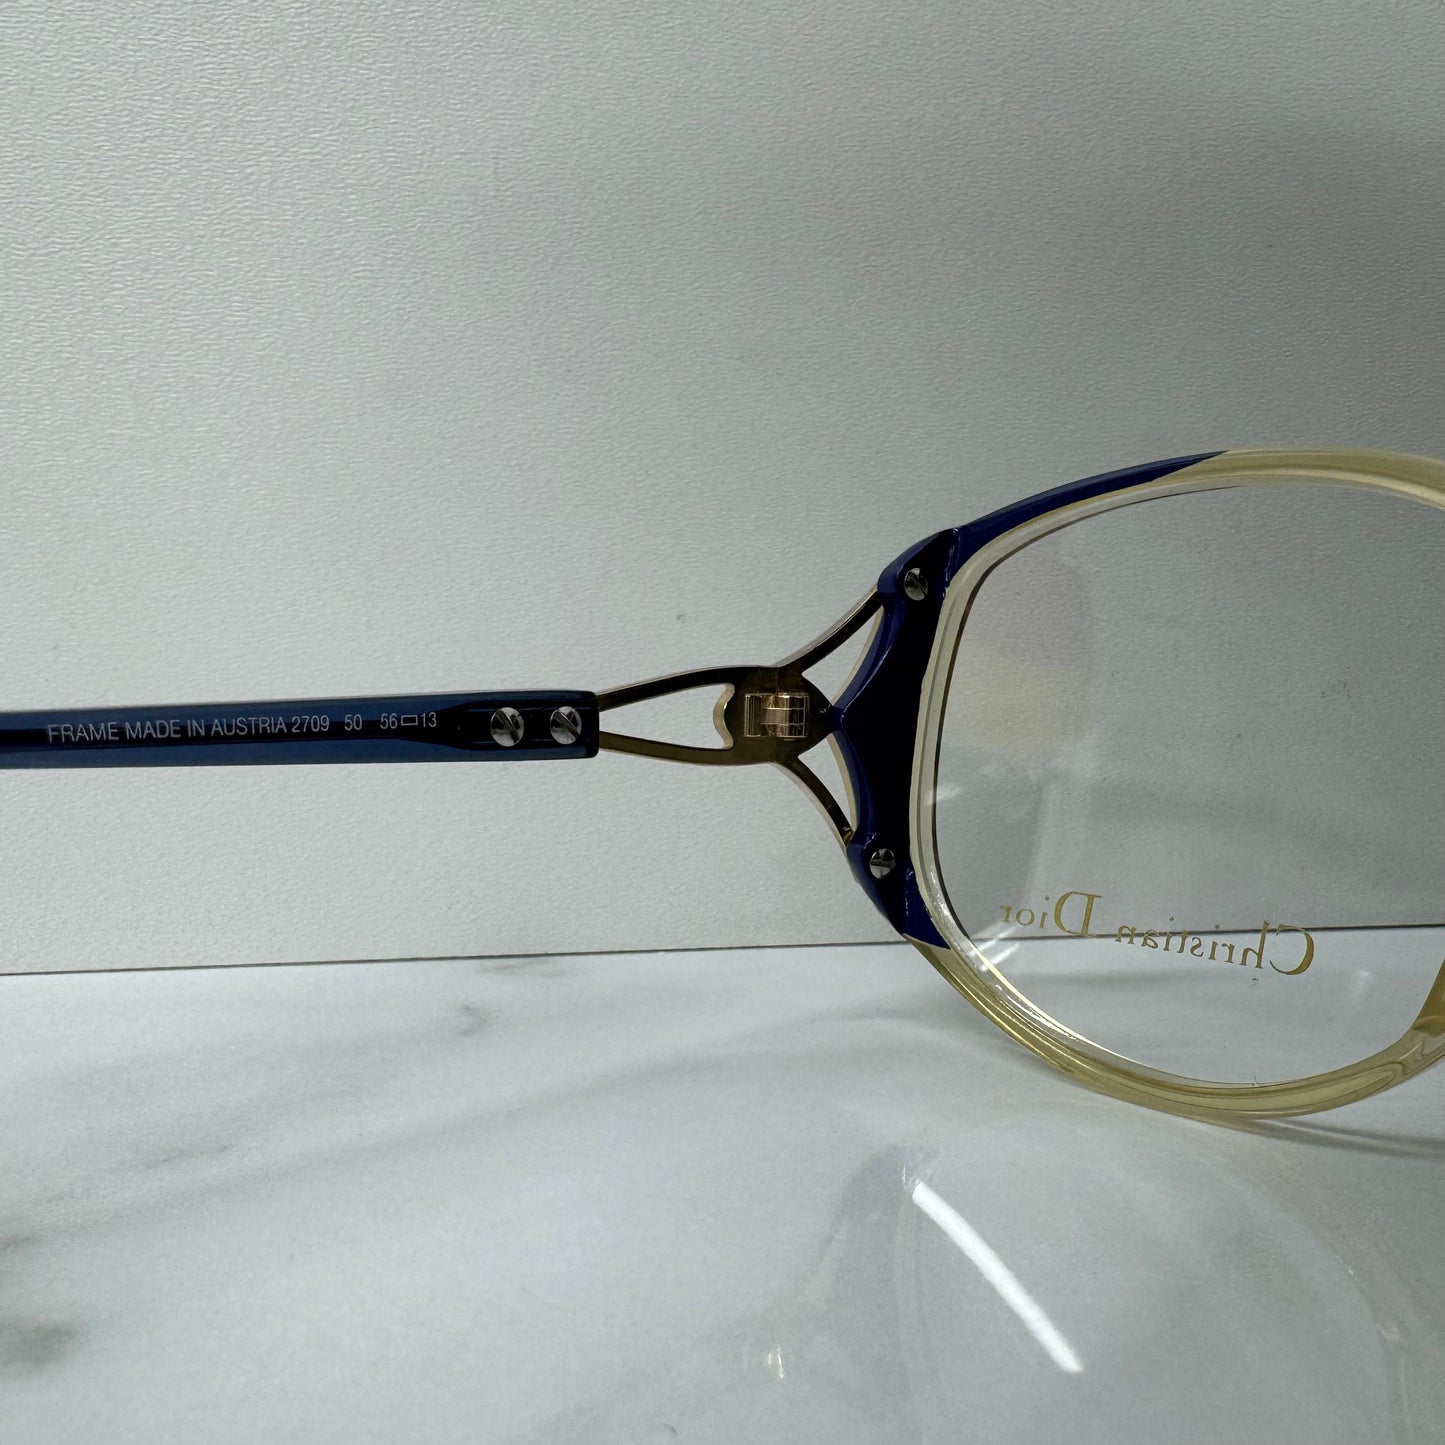 Vintage Christian Dior Glasses Frames - 2709 Clear & Blue Round Eyeglasses